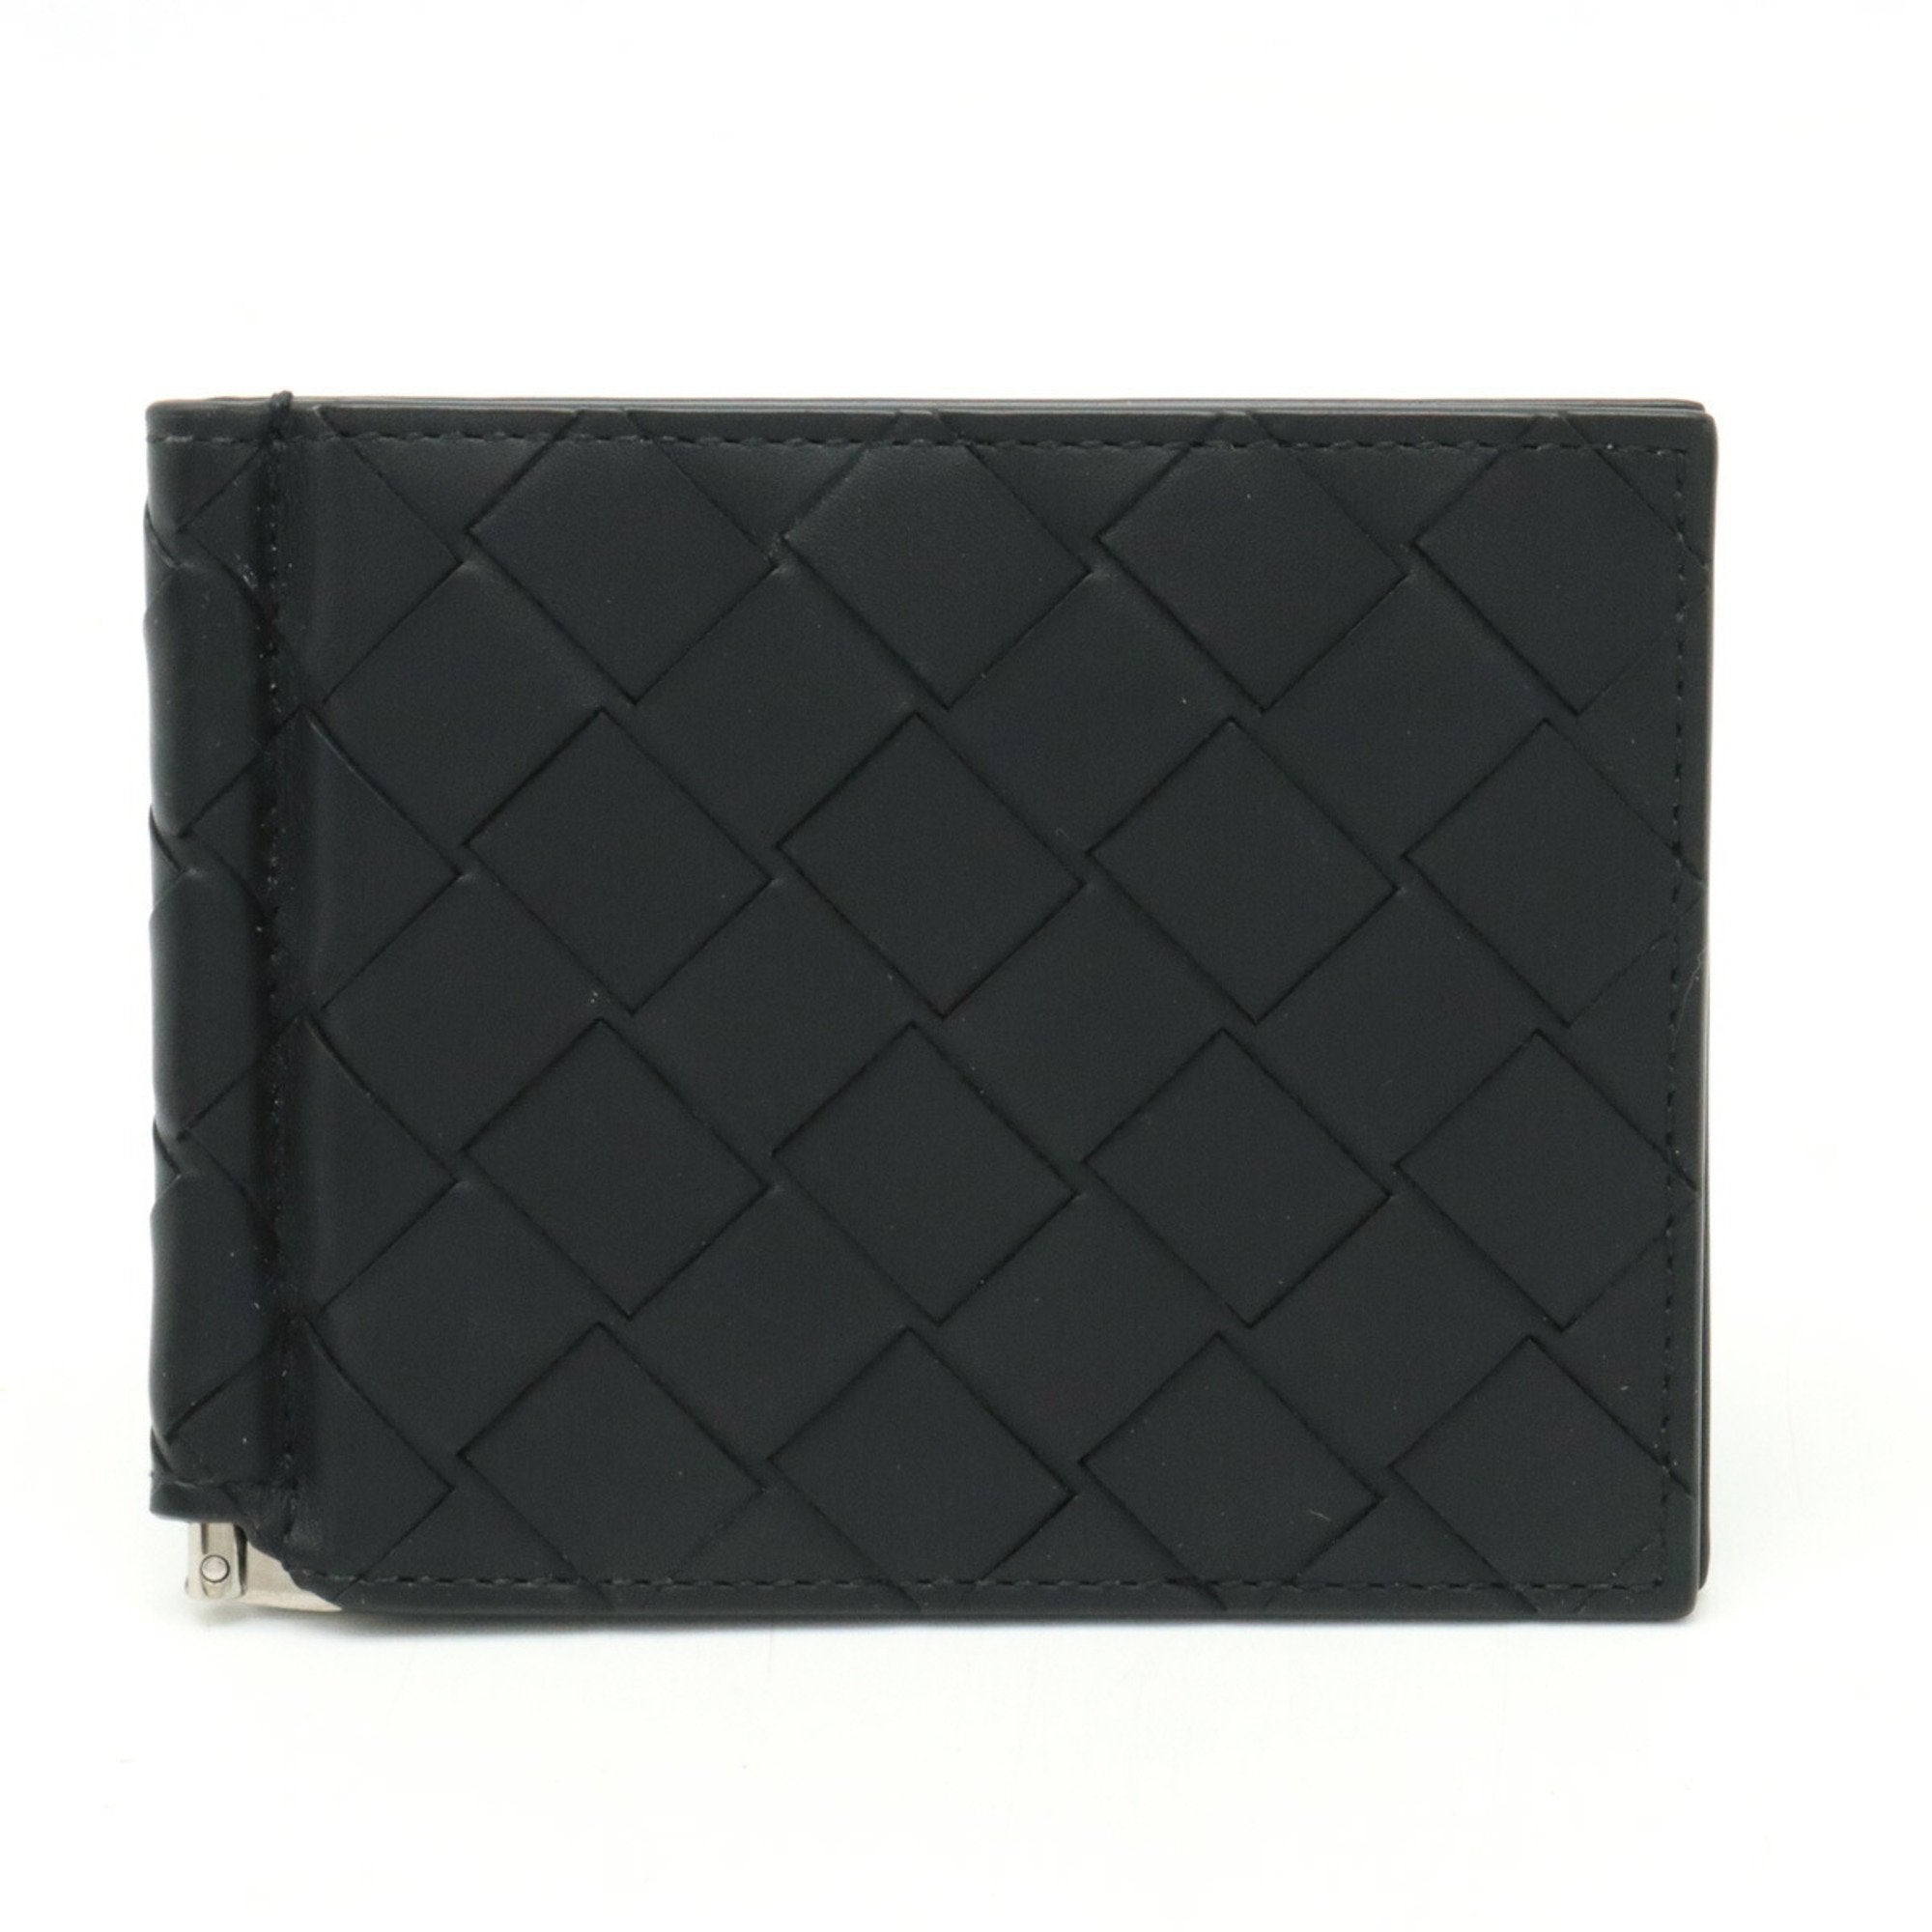 Maxi Intrecciato Billfold With Money Clip Leather Black 592626